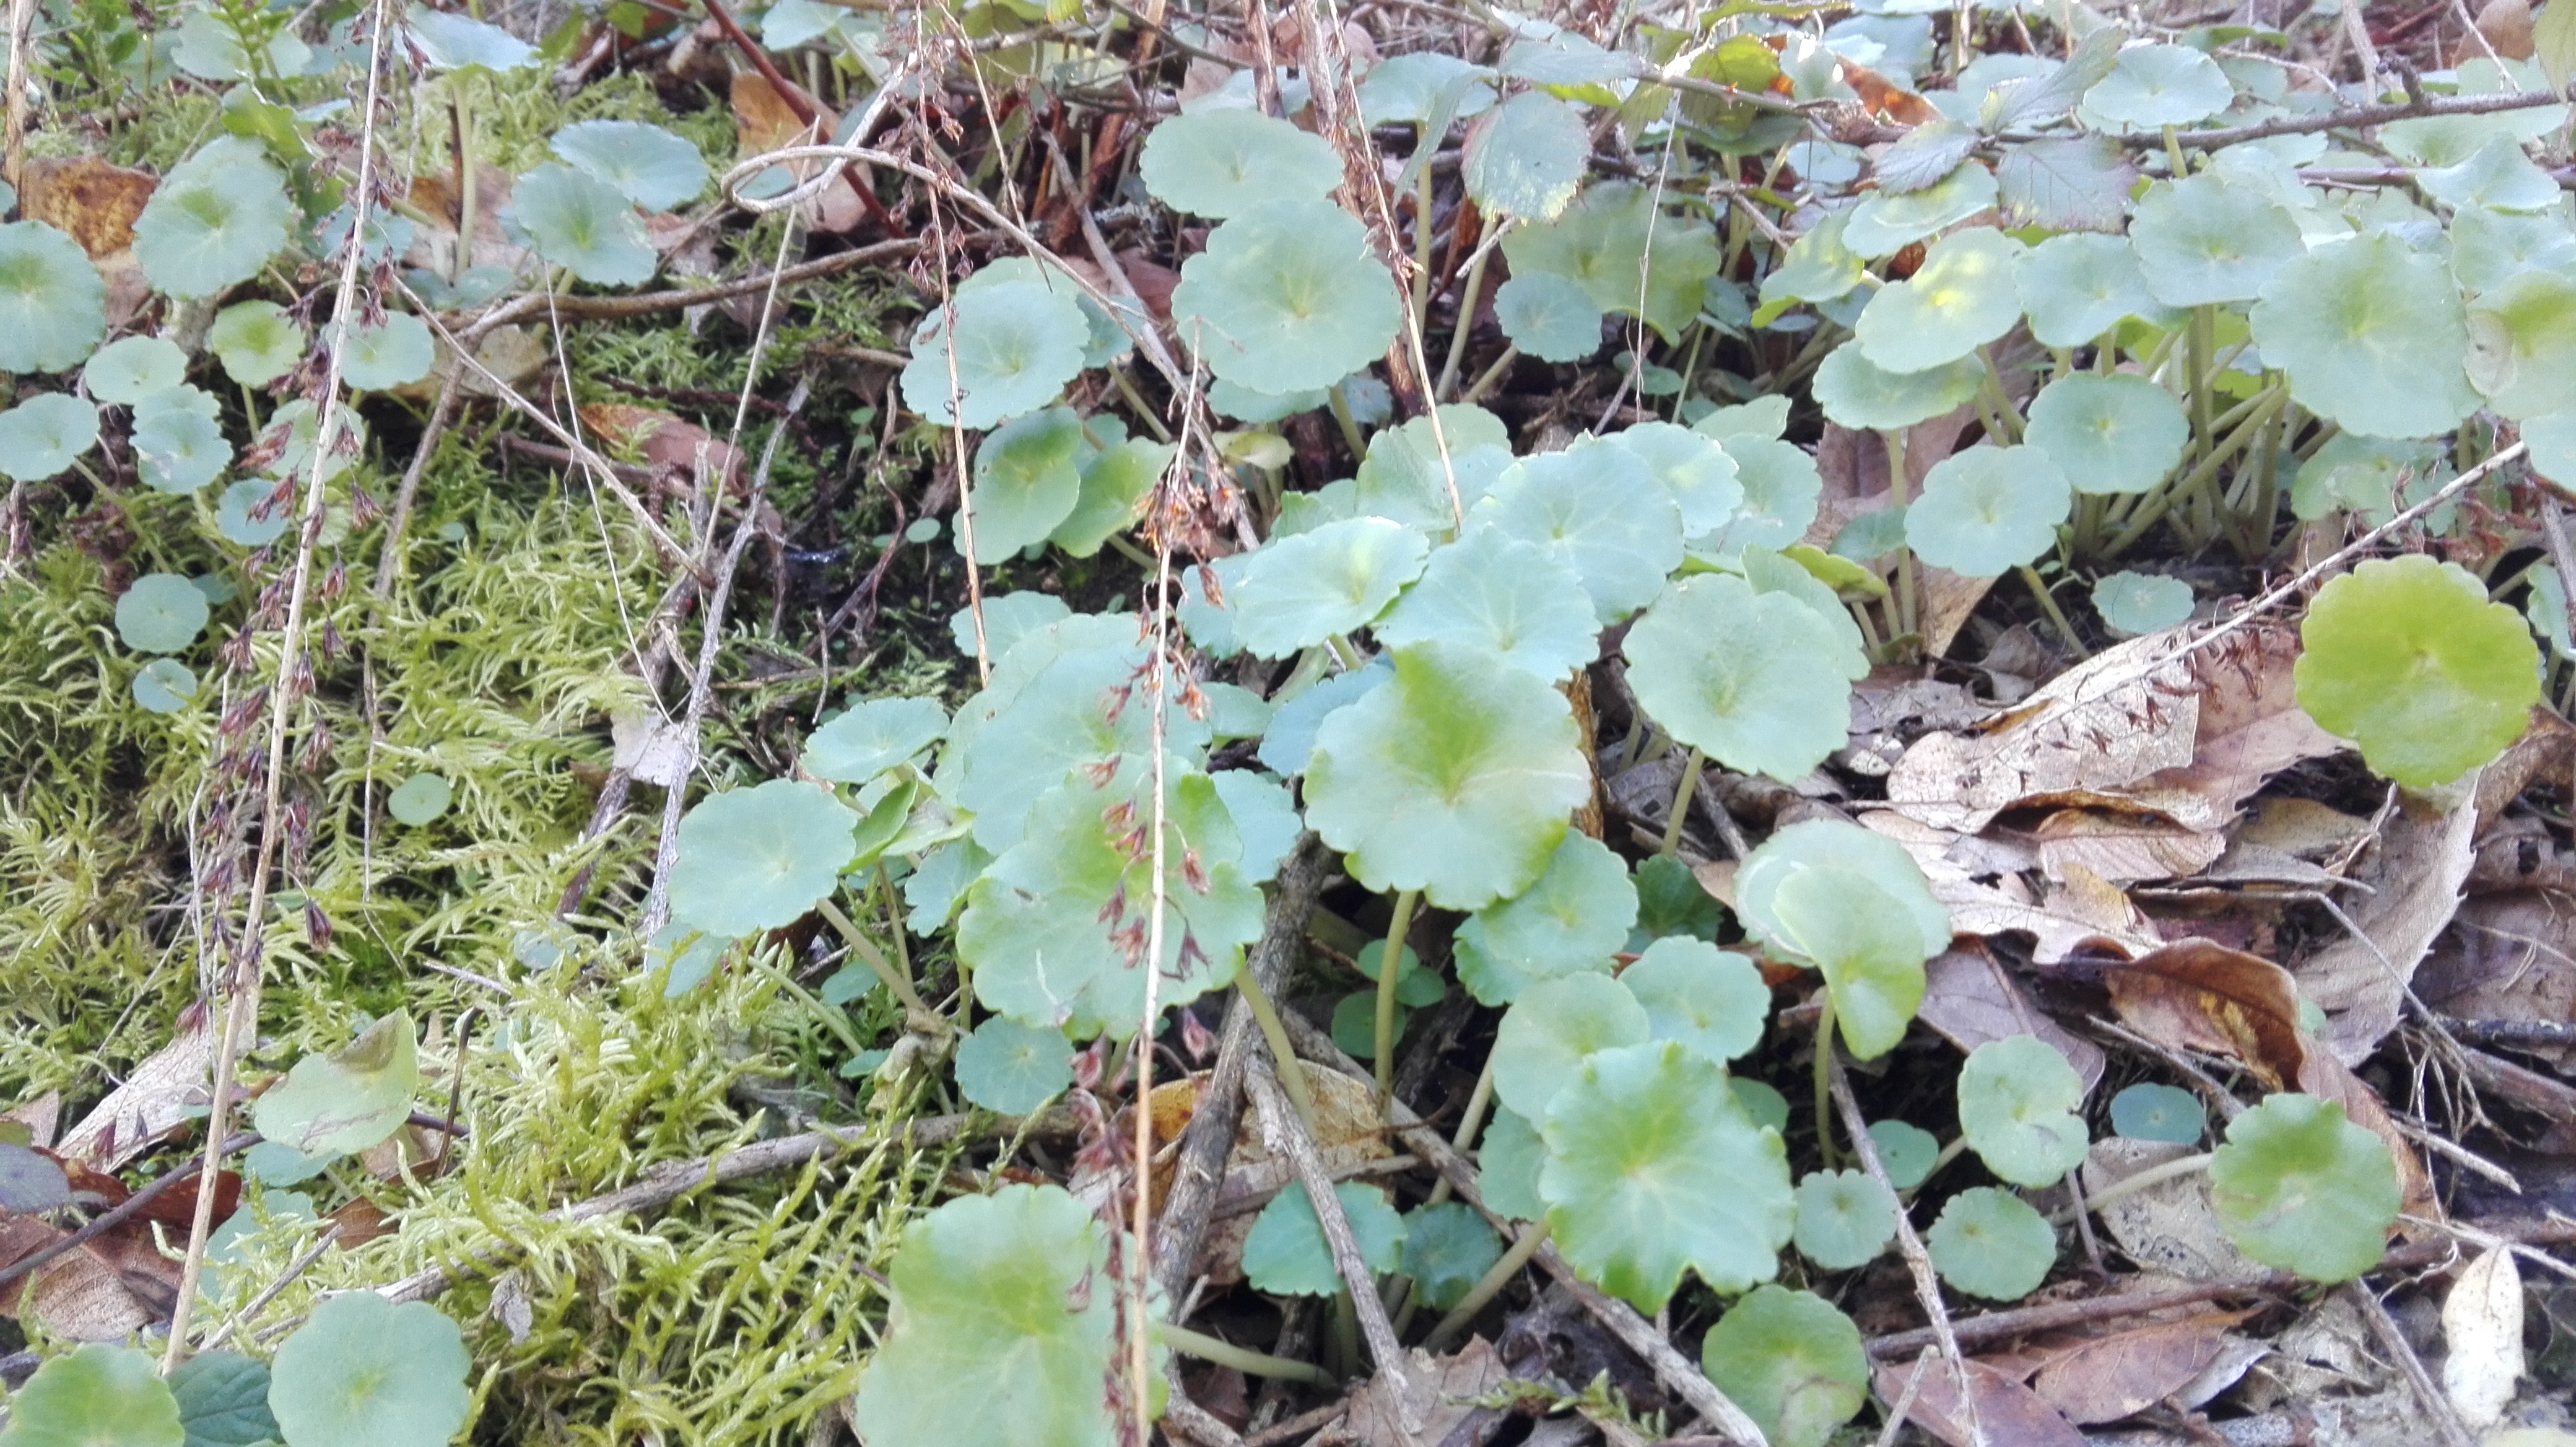 Exemplo de uma planta estudada durante o percurso, o umbigo-de-vénus.